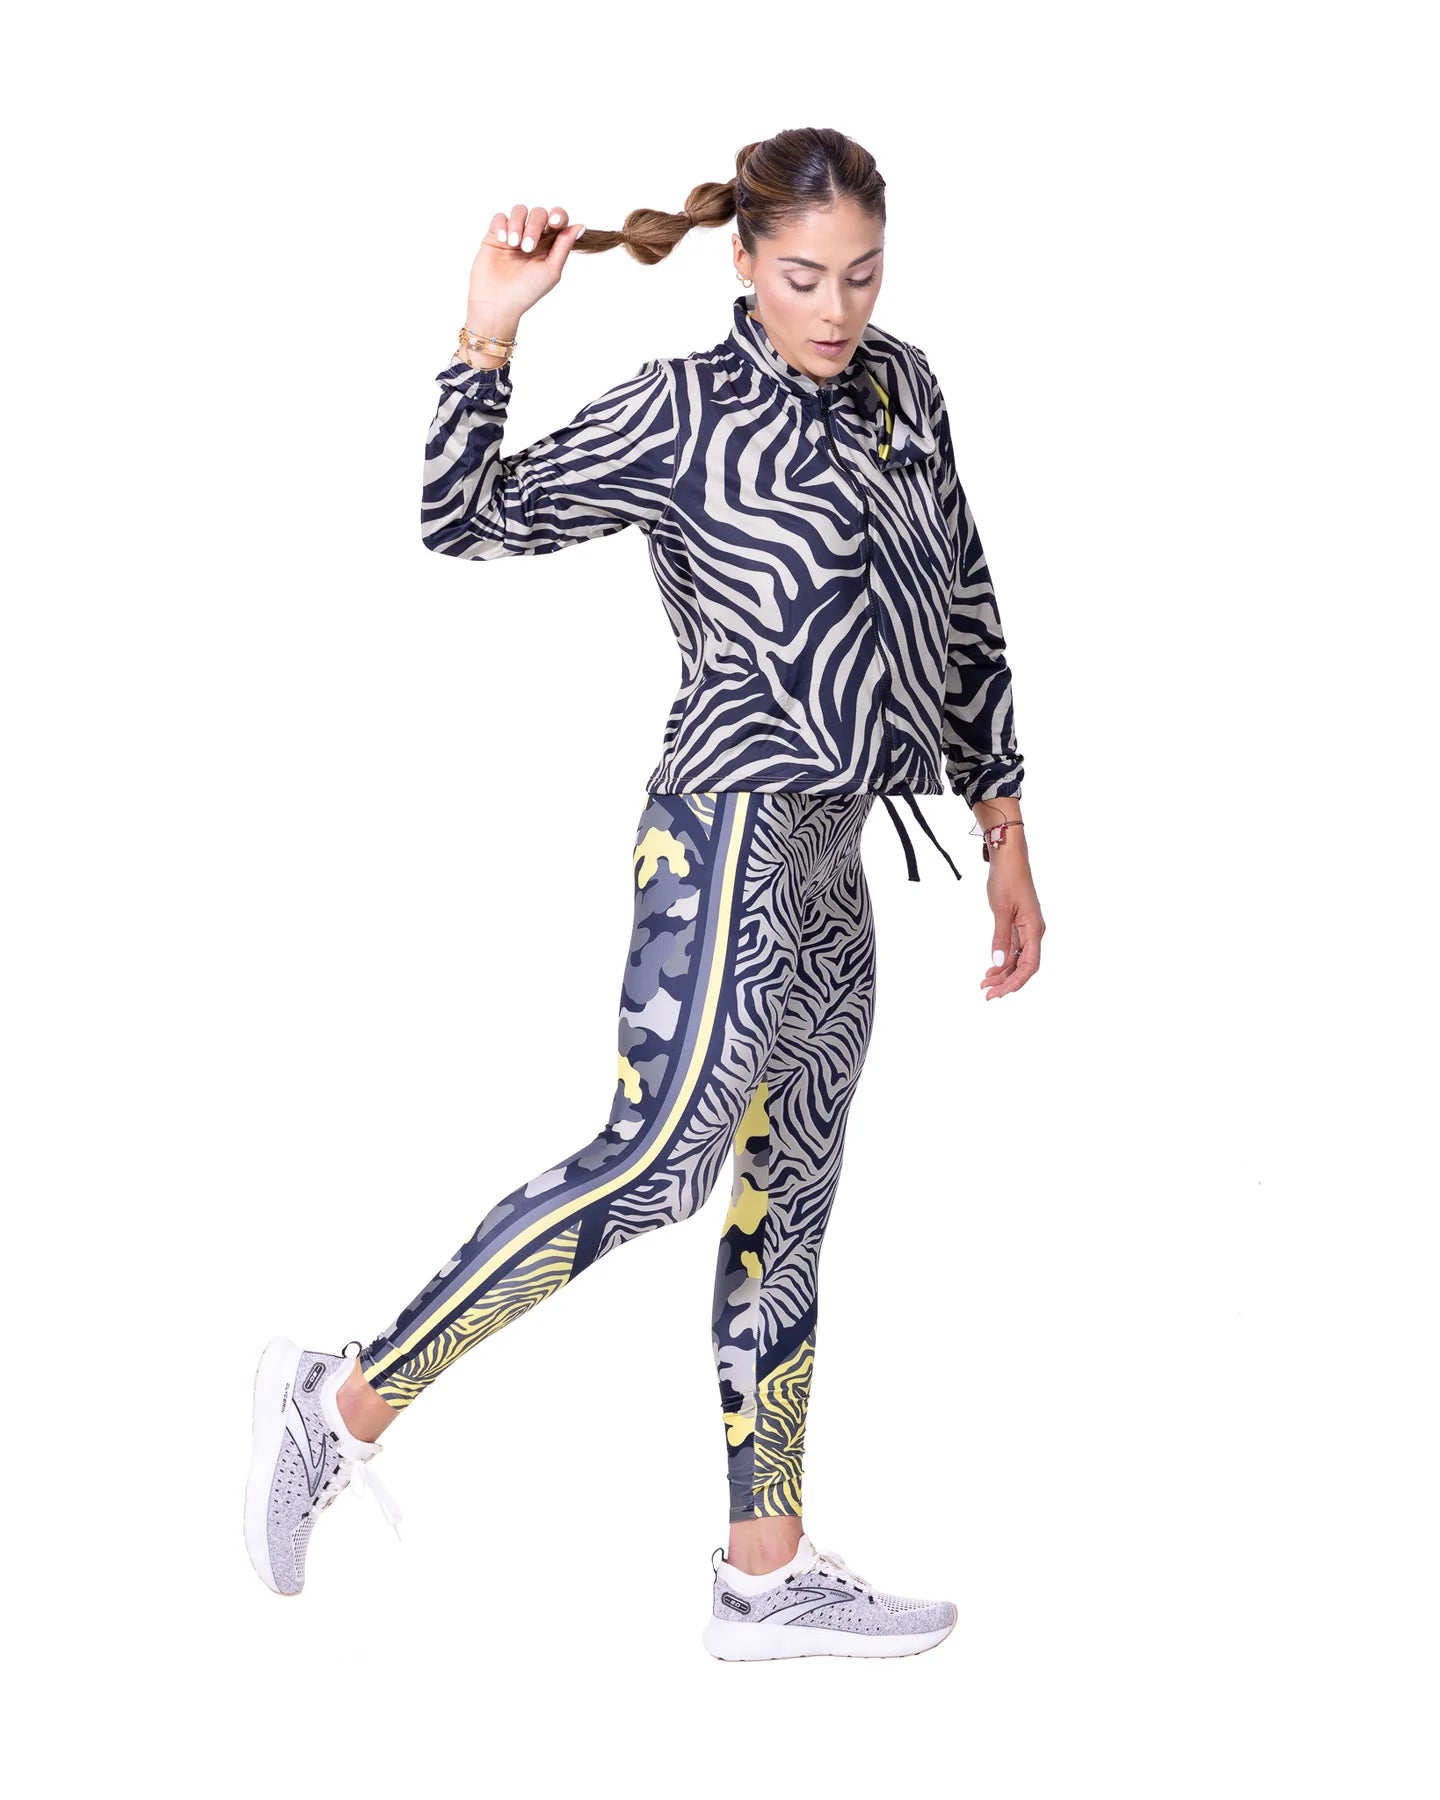 Zebra Animal Print 80s Leggings Black & White斑馬動物紋內搭褲